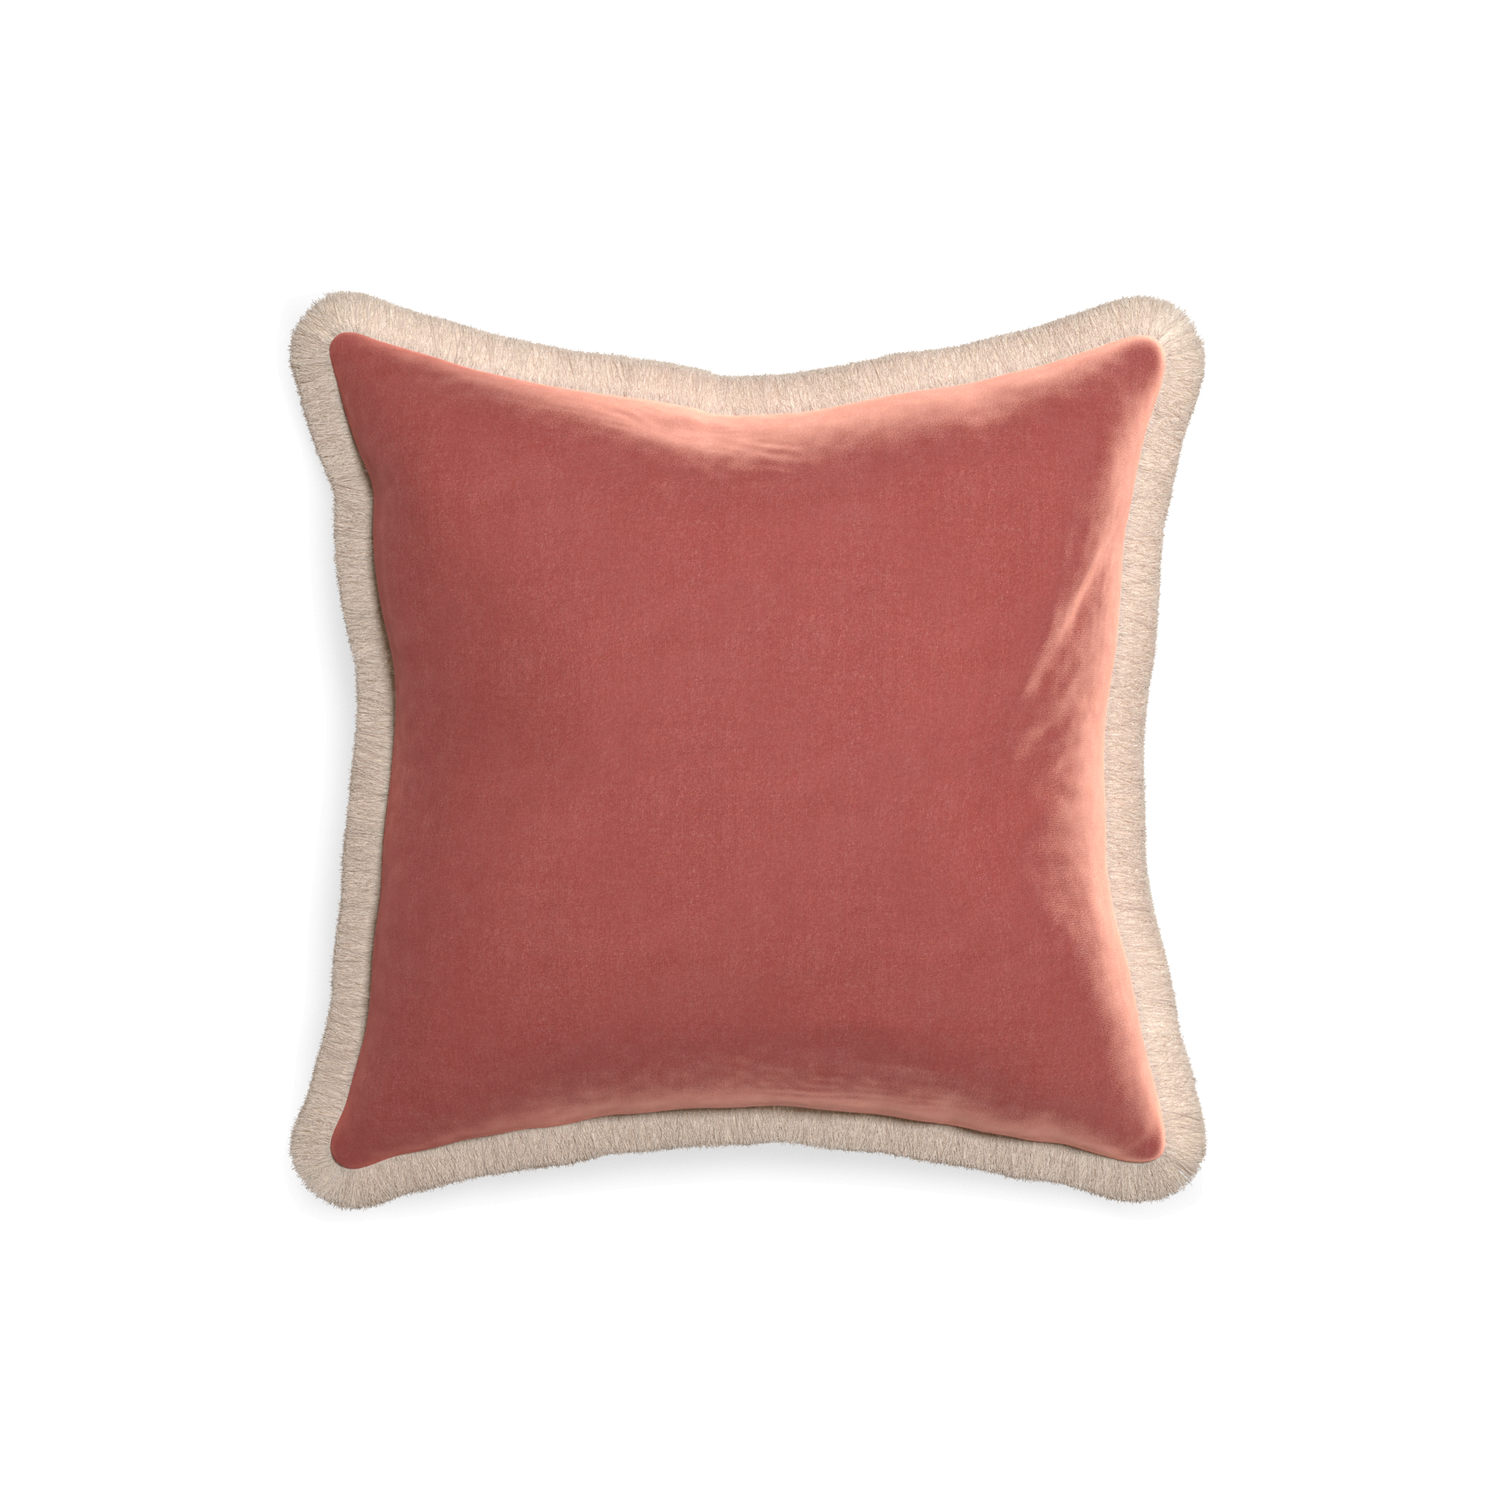 18-square cosmo velvet custom pillow with cream fringe on white background